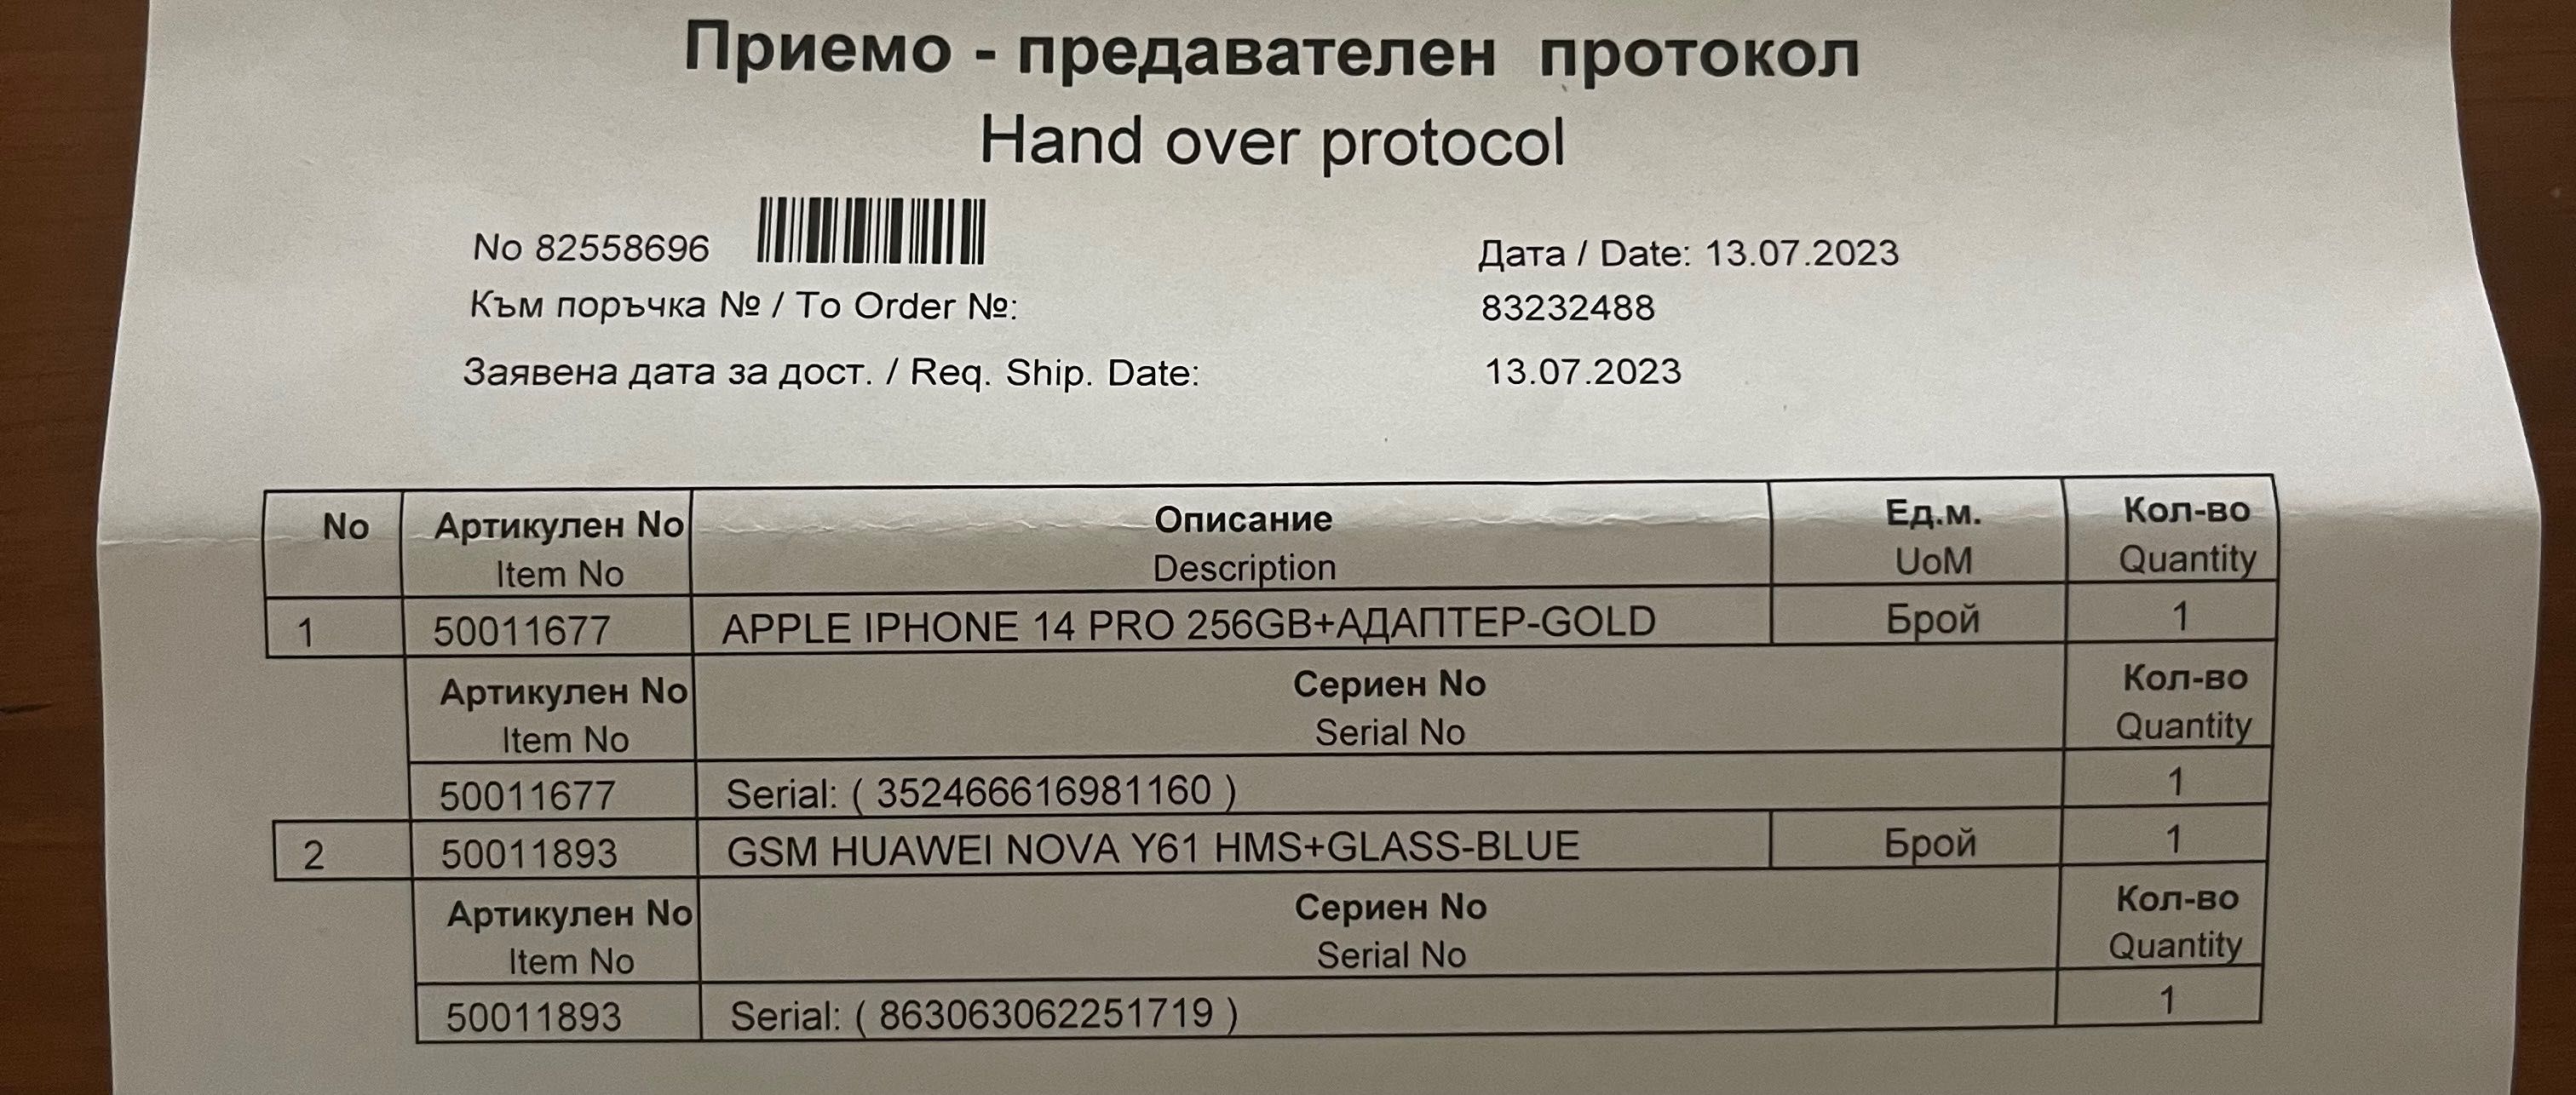 Huawei Nova Y61+Glass-blue 64gb dual sim